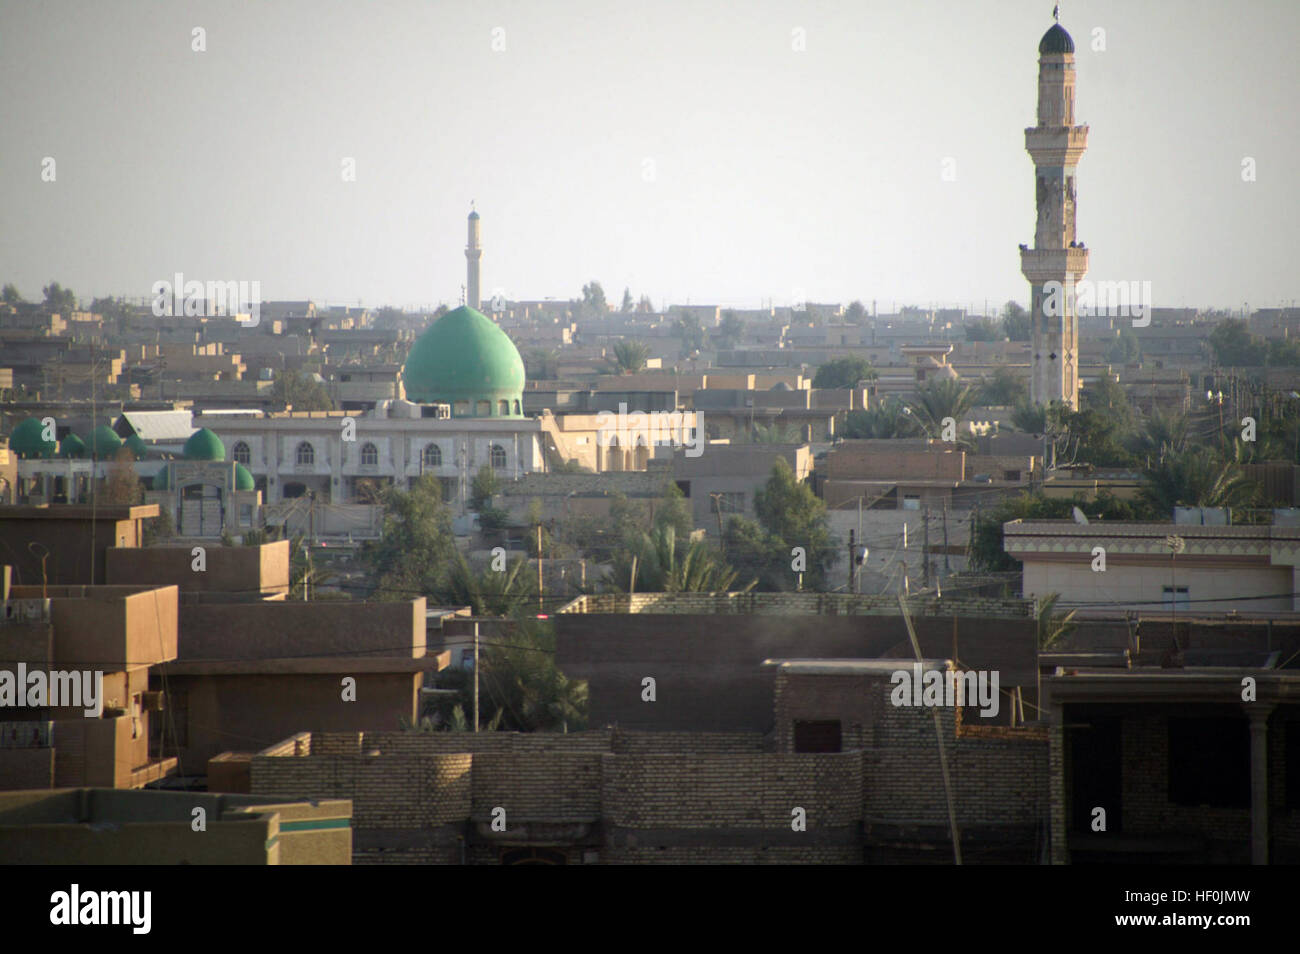 The city of Fallujah, Al Anbar Province, Iraq, during Operation IRAQI FREEDOM. Fallujah Stock Photo